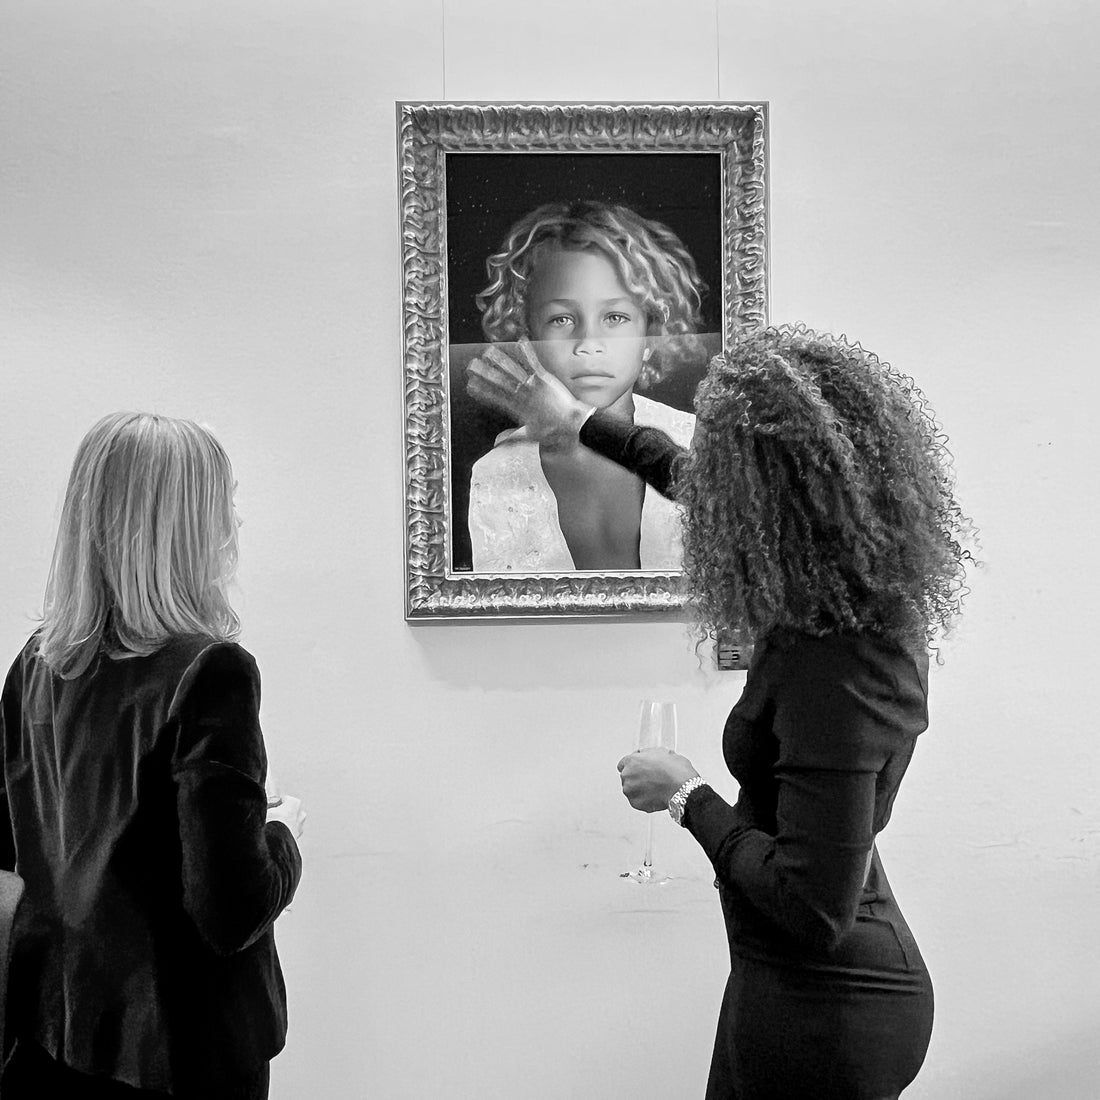 artist marie de decker showing her art to a client